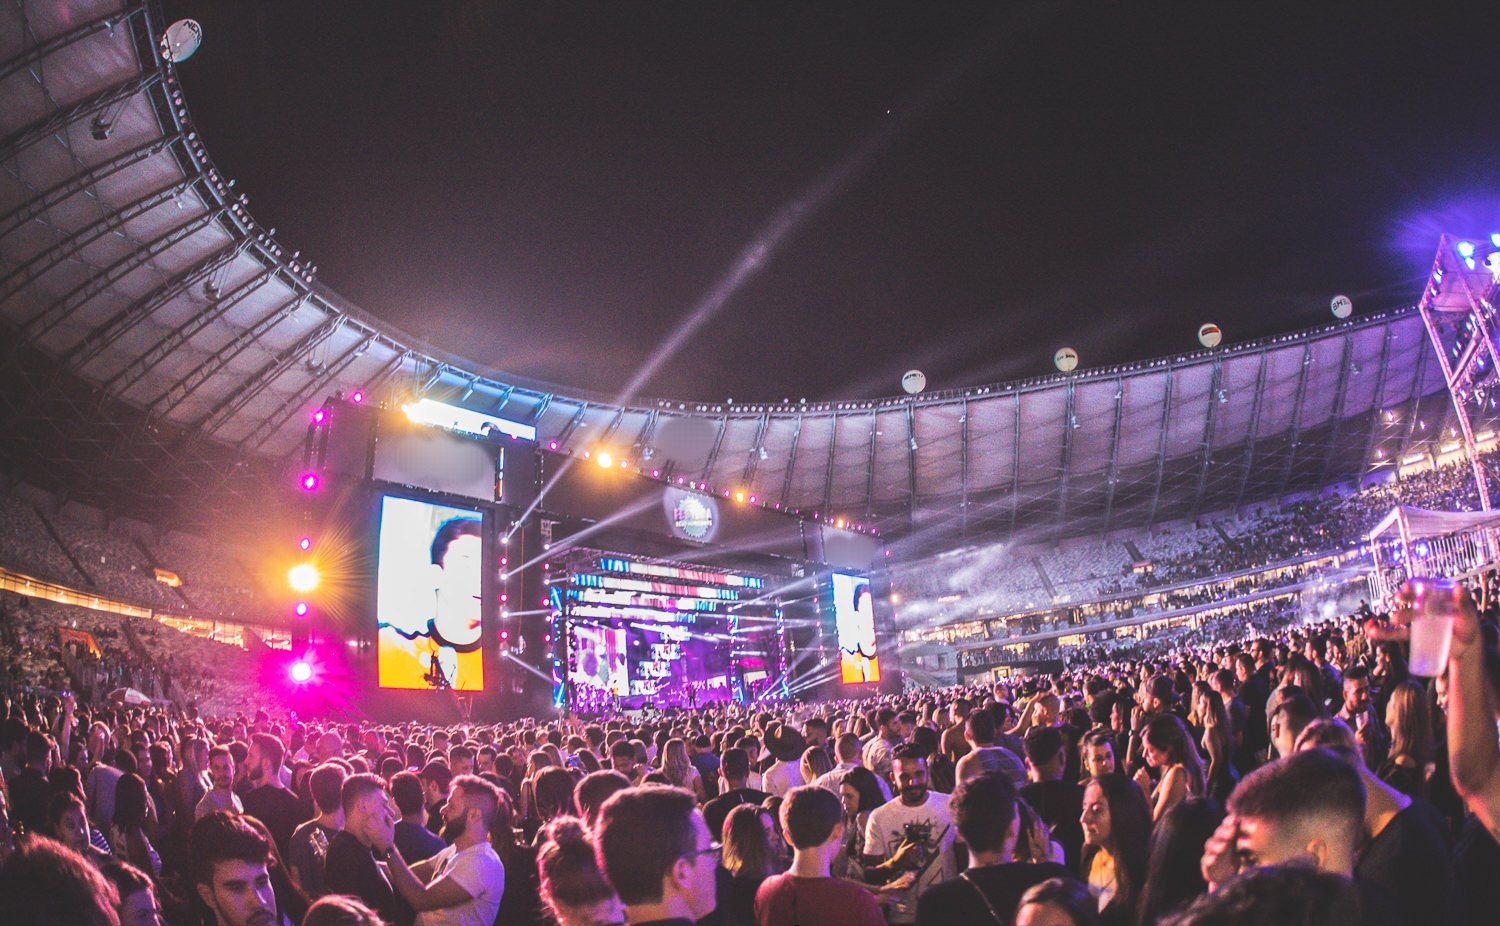 Palco da ultima edicao do Festeja Belo Horizonte realizada em 2019 POP CYBER